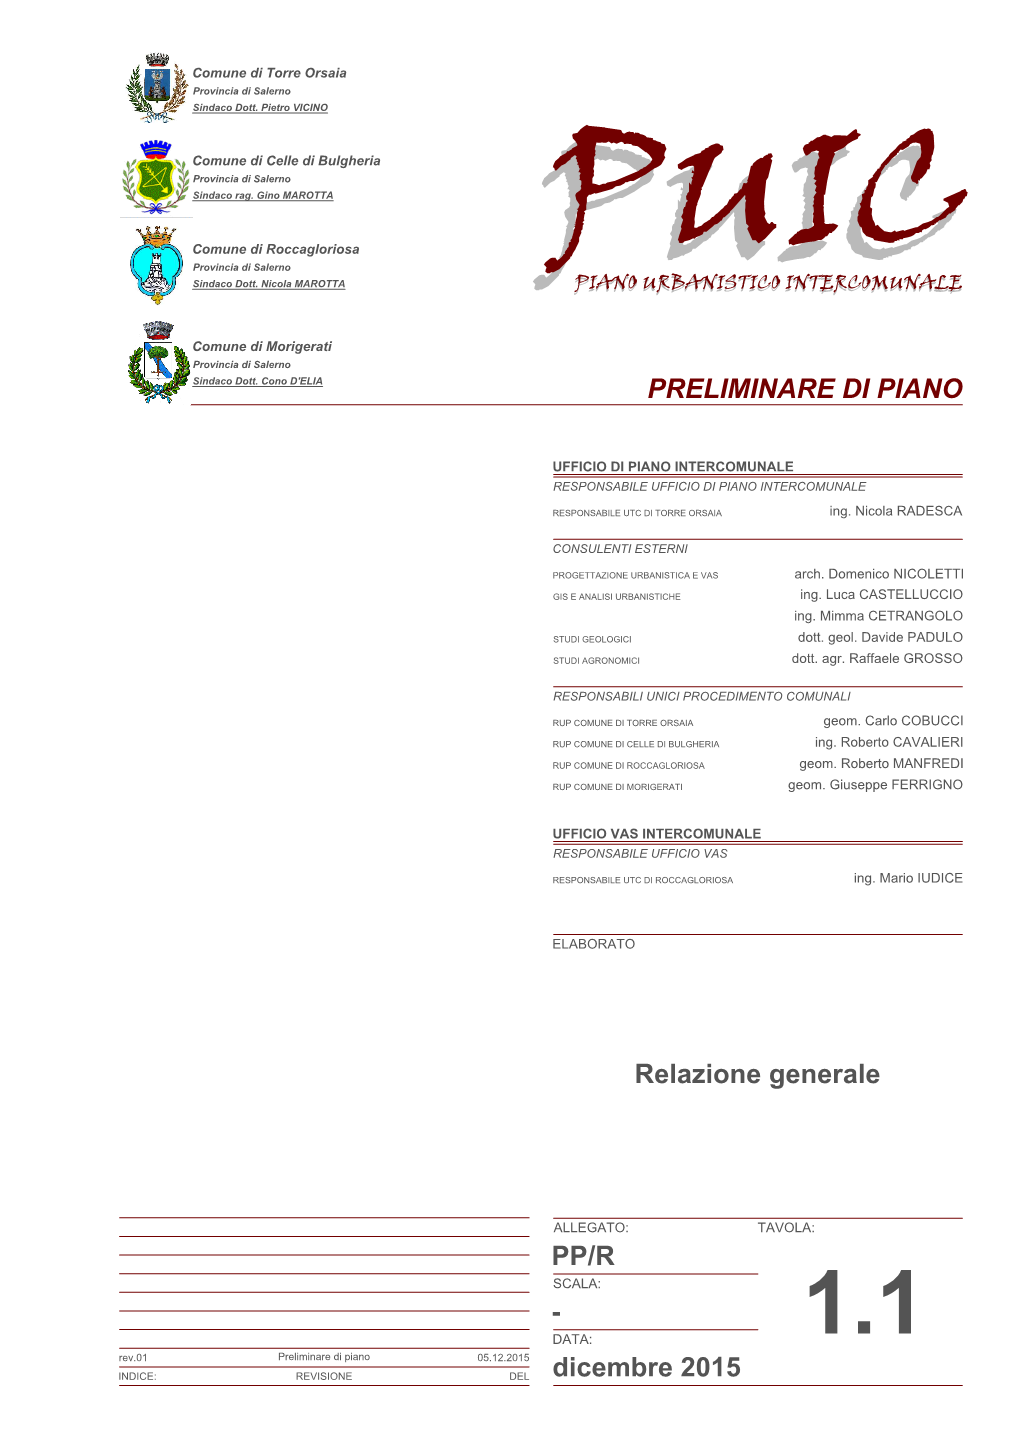 Dicembre 2015 Relazione Generale PRELIMINARE DI PIANO